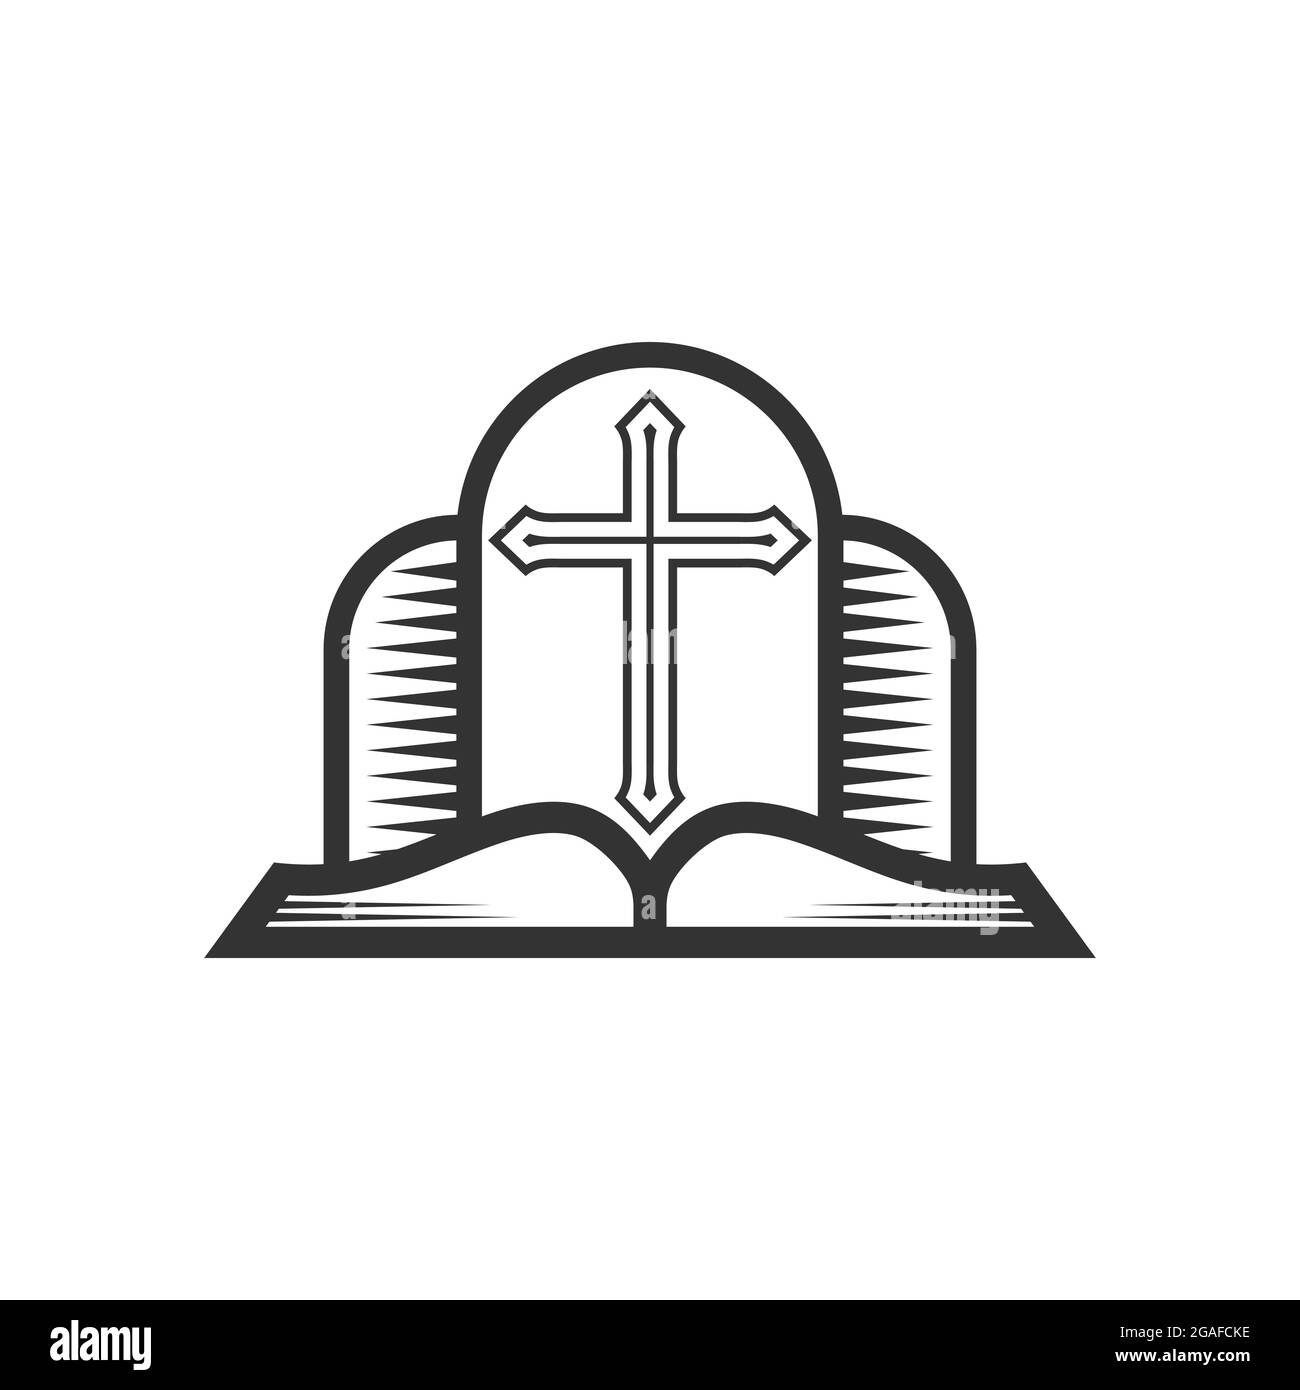 Christliche Illustration. Kirchenlogo. Kreuz des Herrn Jesus Christus und offene bibel. Stock Vektor